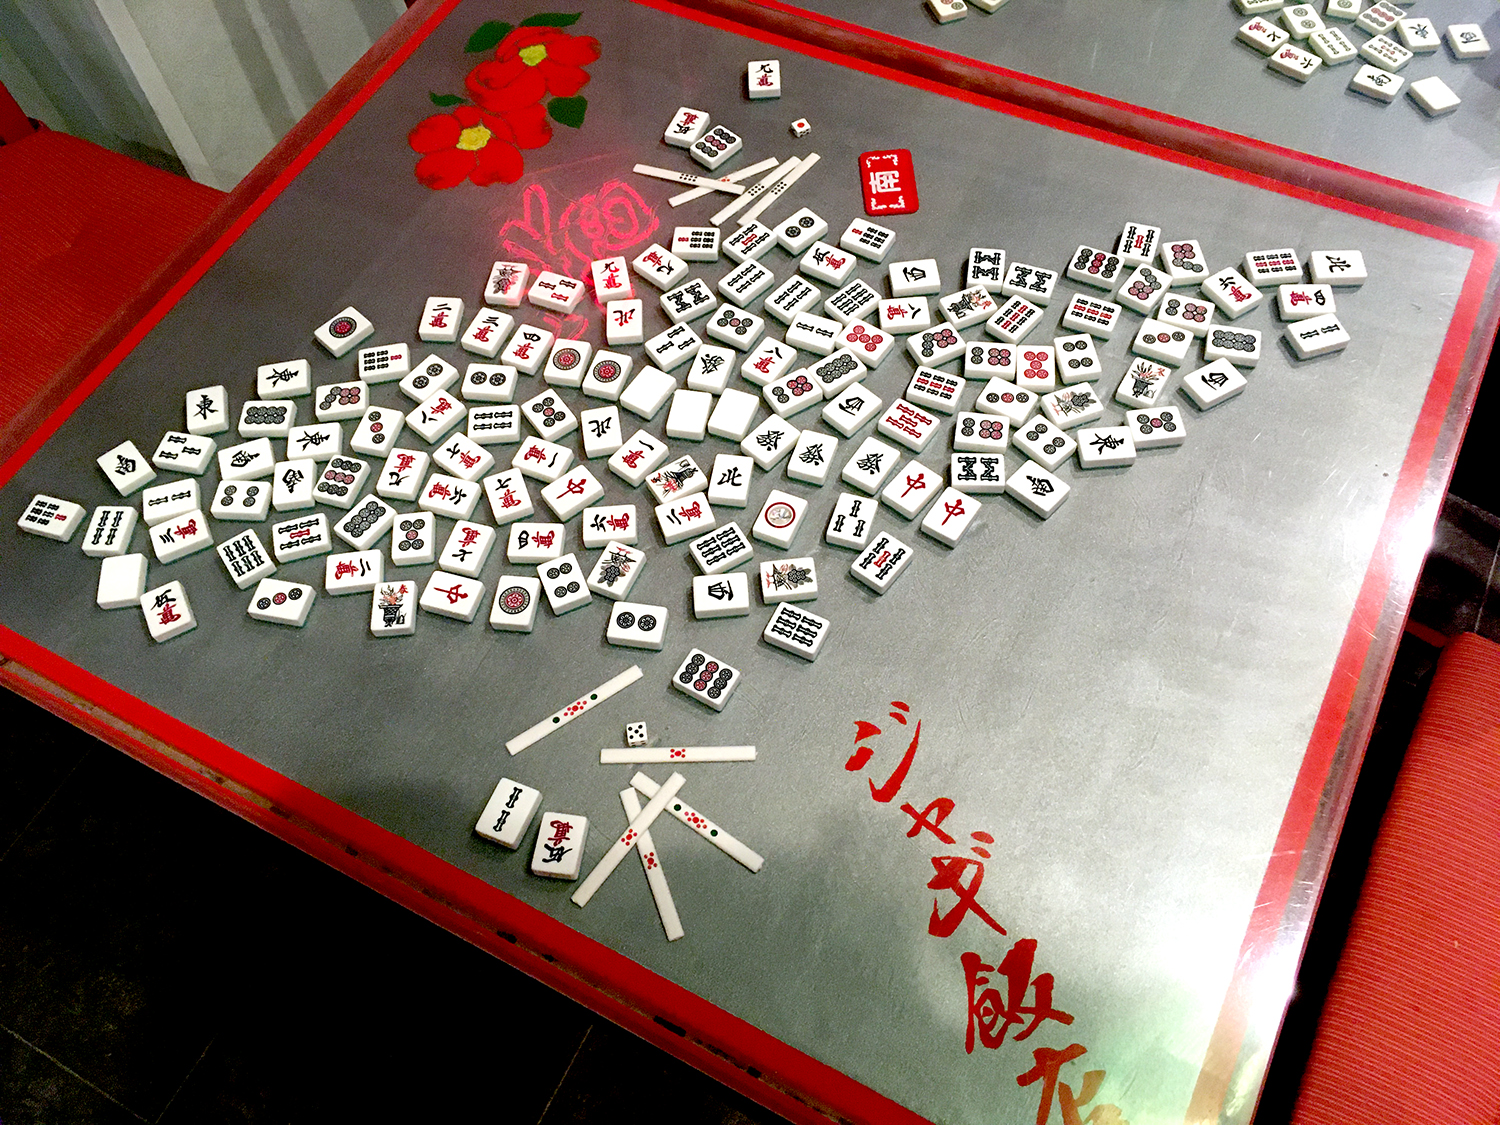 テーブルのガラス面には実物の麻雀牌が埋め込まれている。このオリジナリティあふれるテーブルも元木さんが自ら作ったそう。